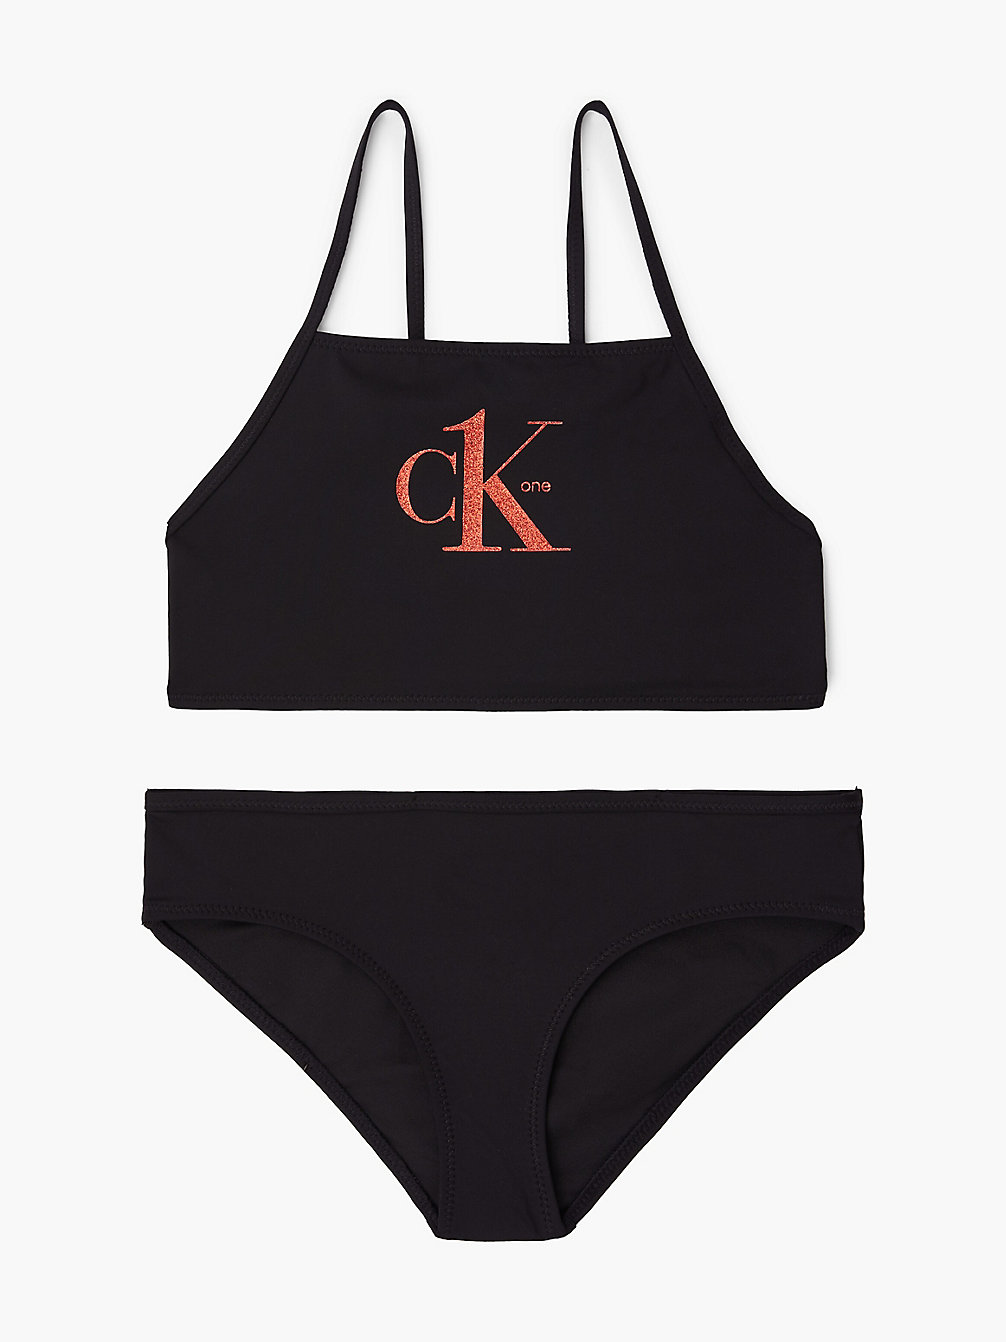 PVH BLACK > Meisjesbralette Bikini - Y2ck One > undefined meisjes - Calvin Klein